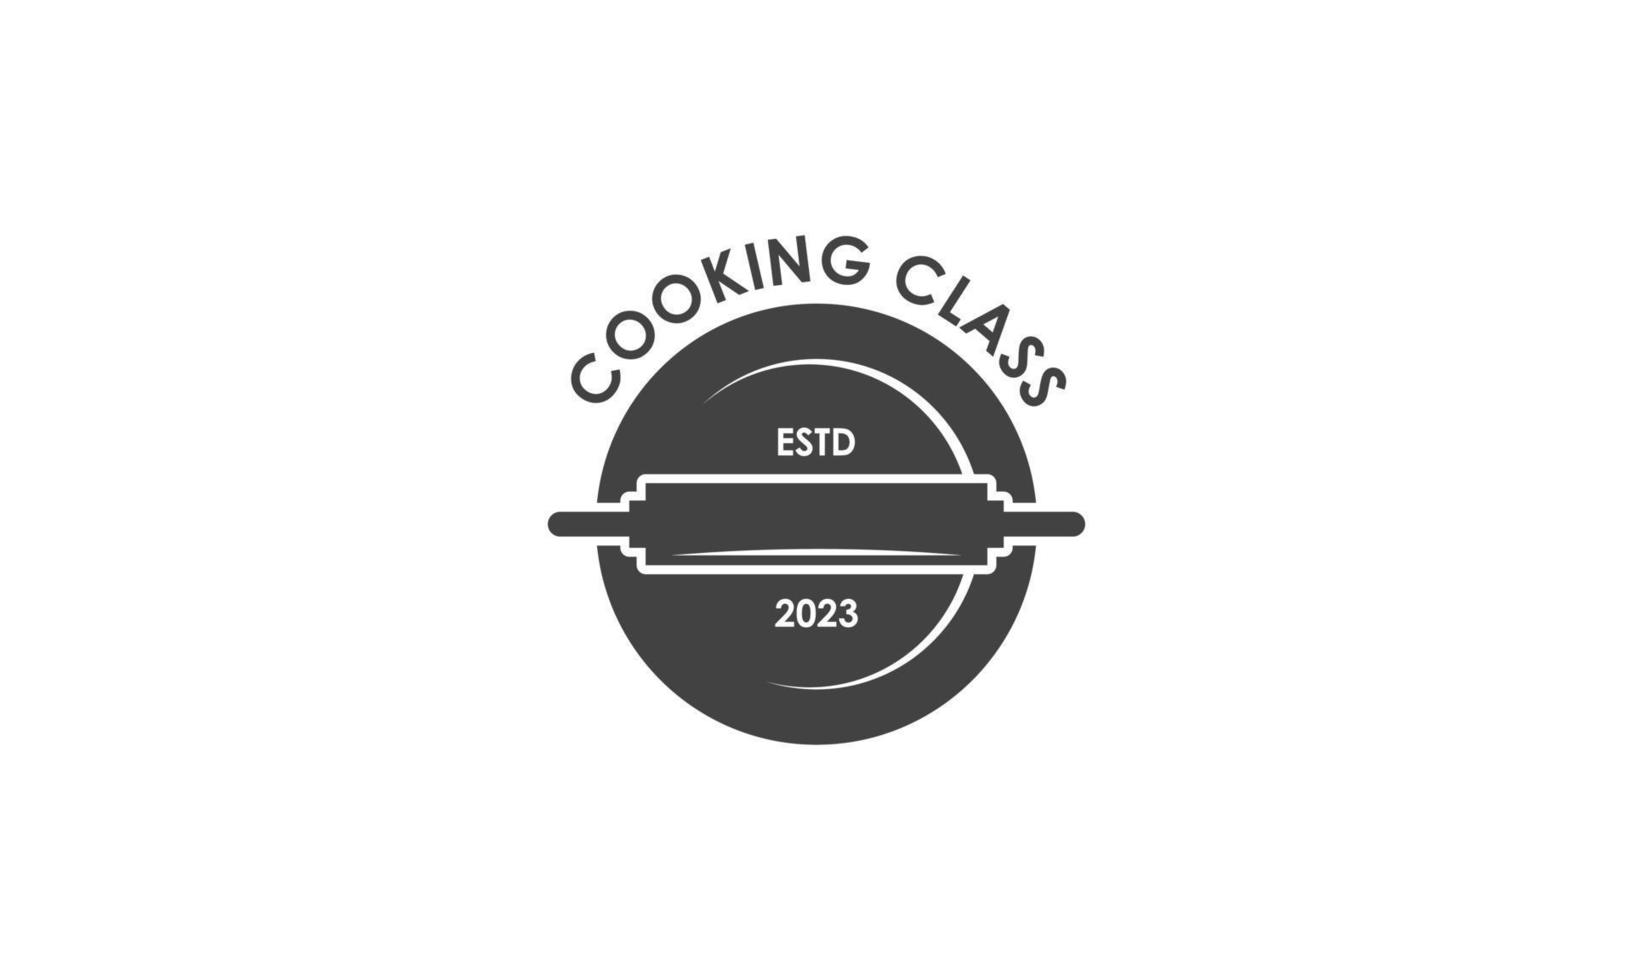 årgång matlagning klass och mat etiketter emblem märken logotyp kulinariska skola matlagning kurser vektor